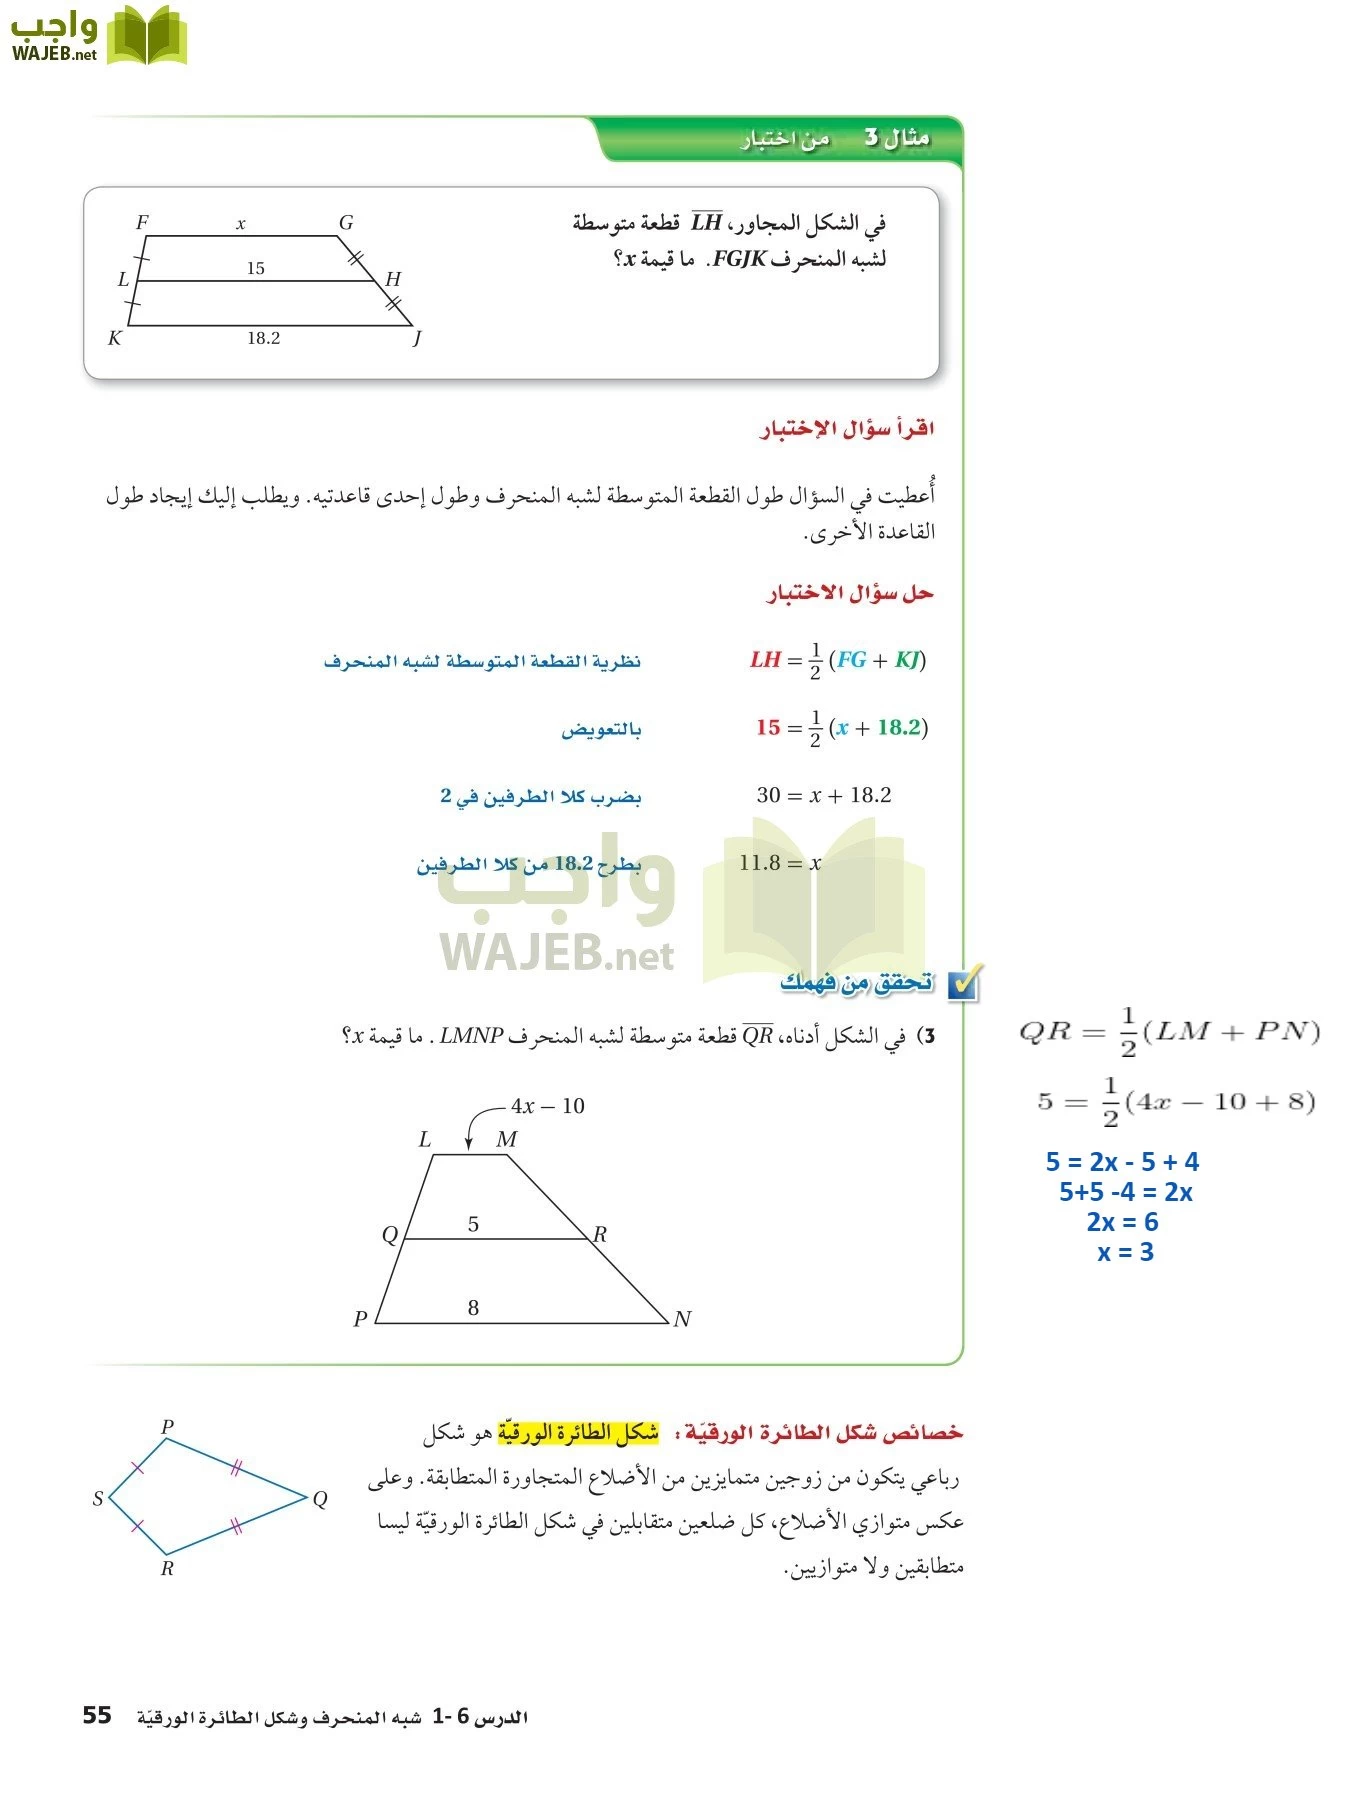 رياضيات 2 مقررات page-54